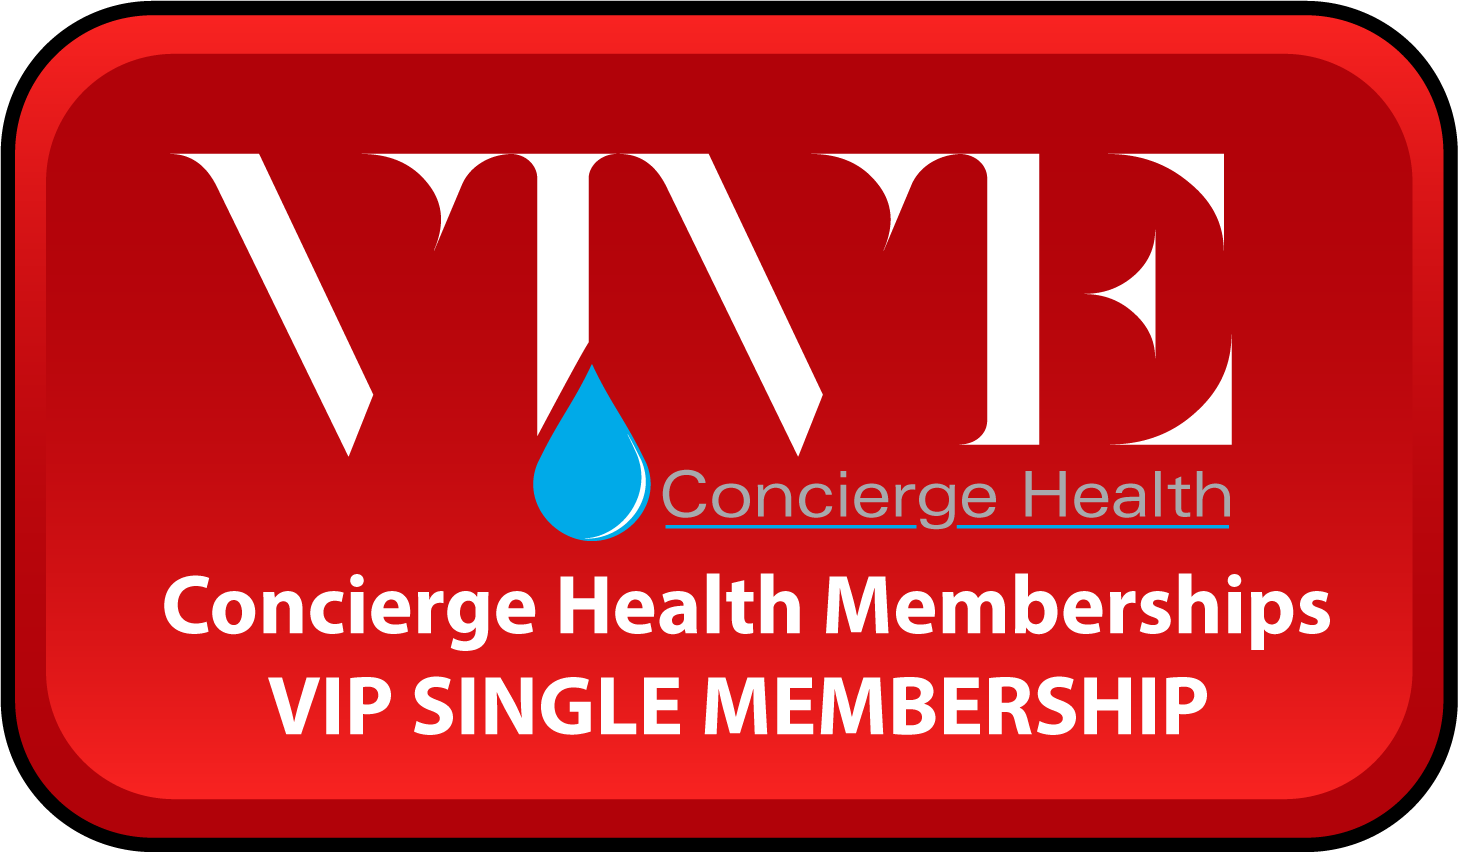 VIP Single Membership